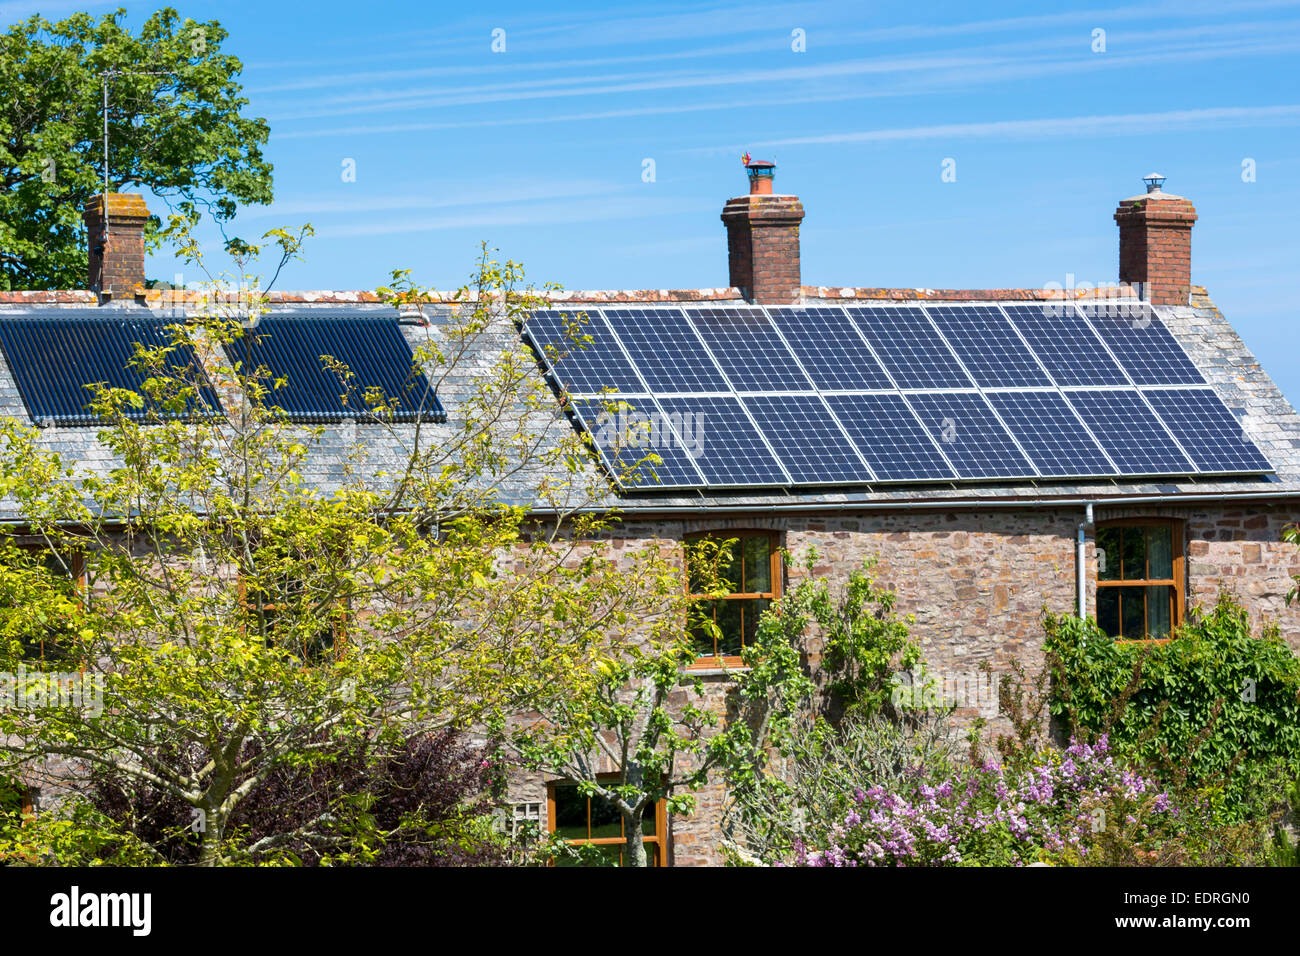 Les panneaux solaires et l'échangeur de chaleur sur le toit pour l'eau chaude sur une période bien à Tosberry Ouest, Devon, dans le sud de l'Angleterre, Royaume-Uni Banque D'Images